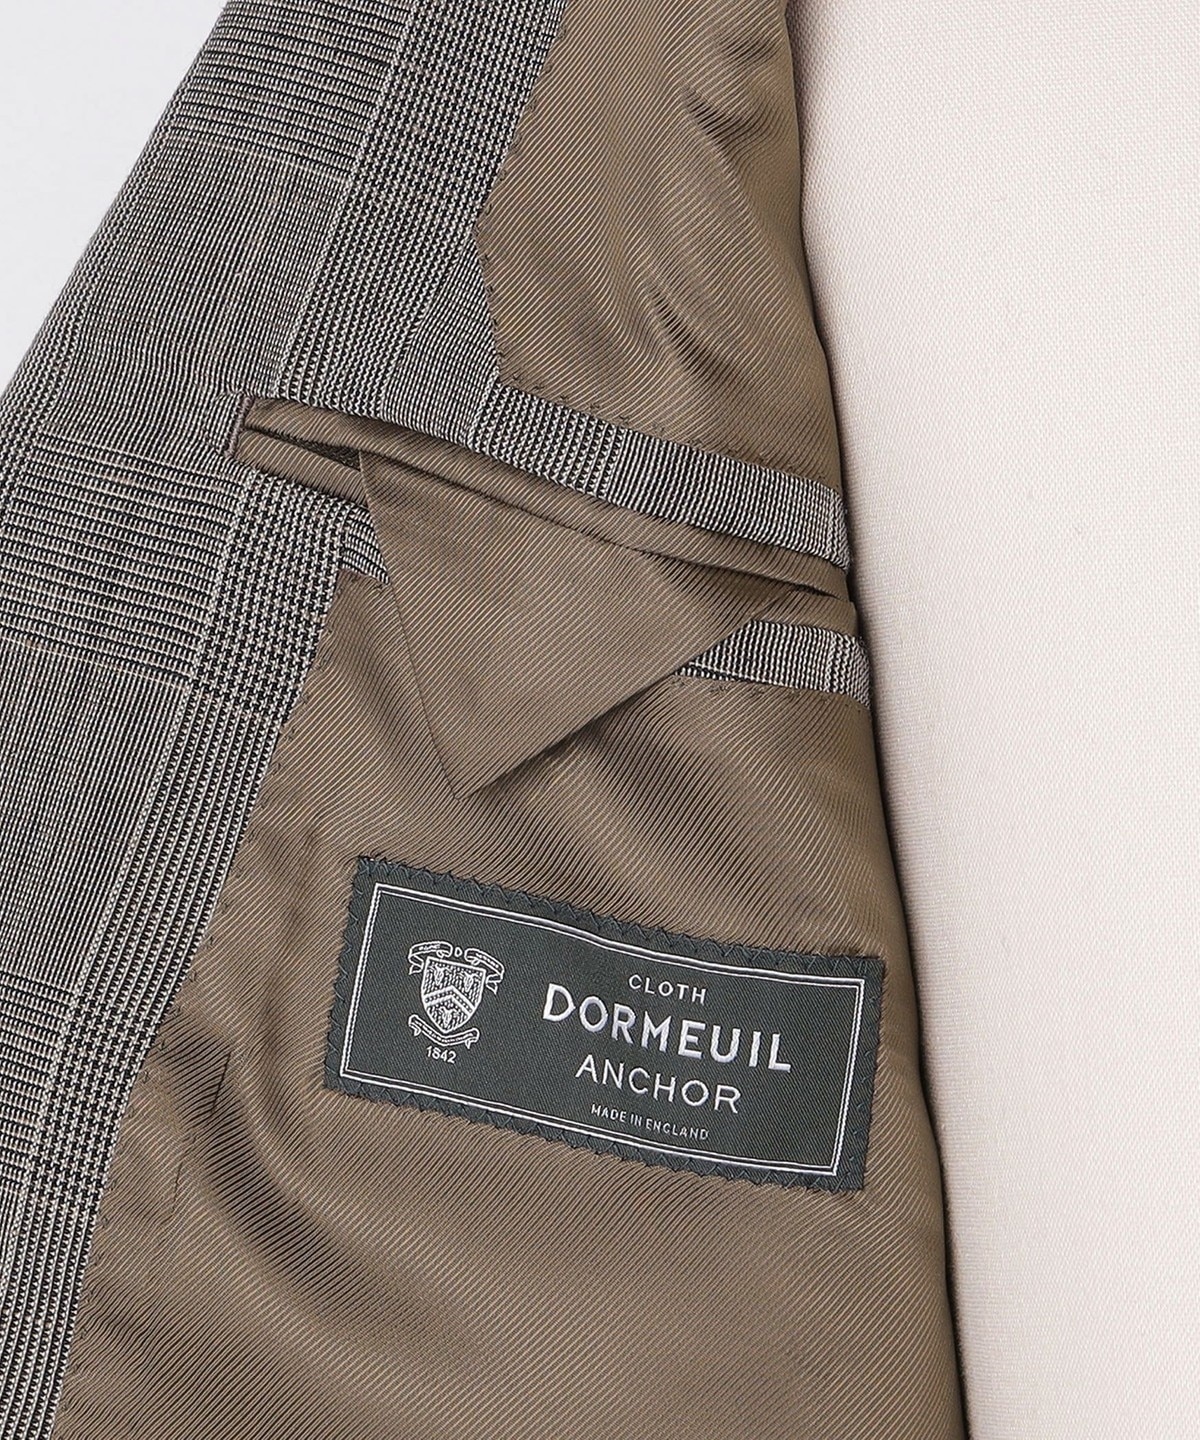 【新品未使用】ドーメル スーツ生地 グレンチェック 織りネーム、タグ付き 希少品